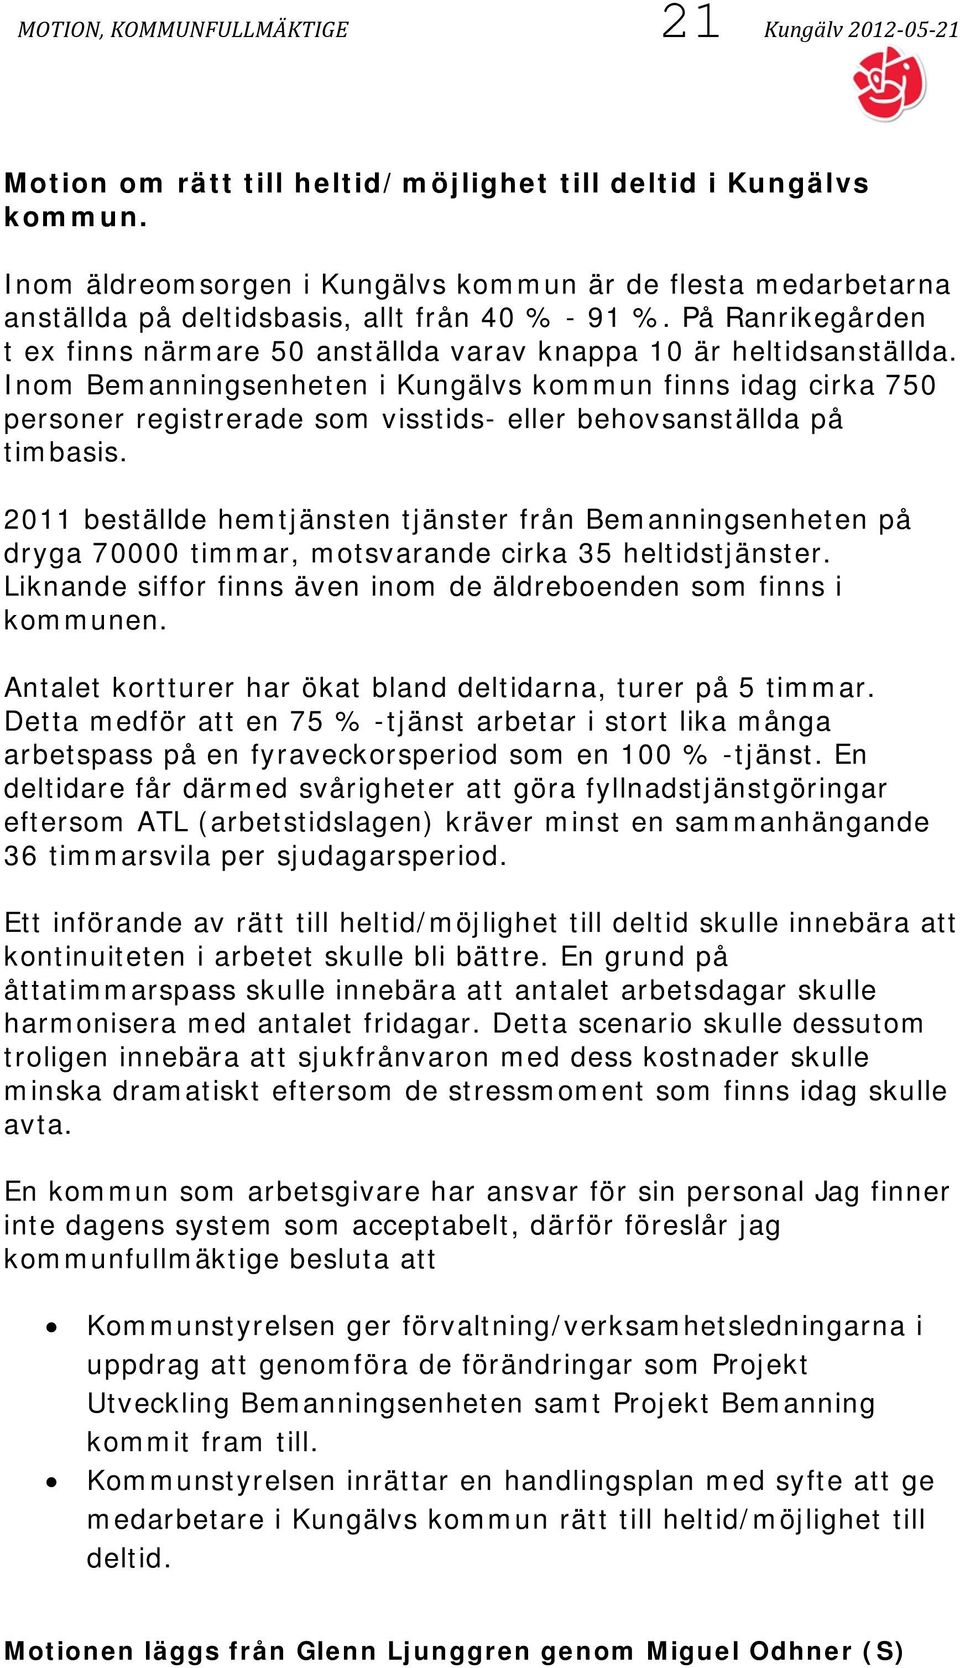 Inom Bemanningsenheten i Kungälvs kommun finns idag cirka 750 personer registrerade som visstids- eller behovsanställda på timbasis.